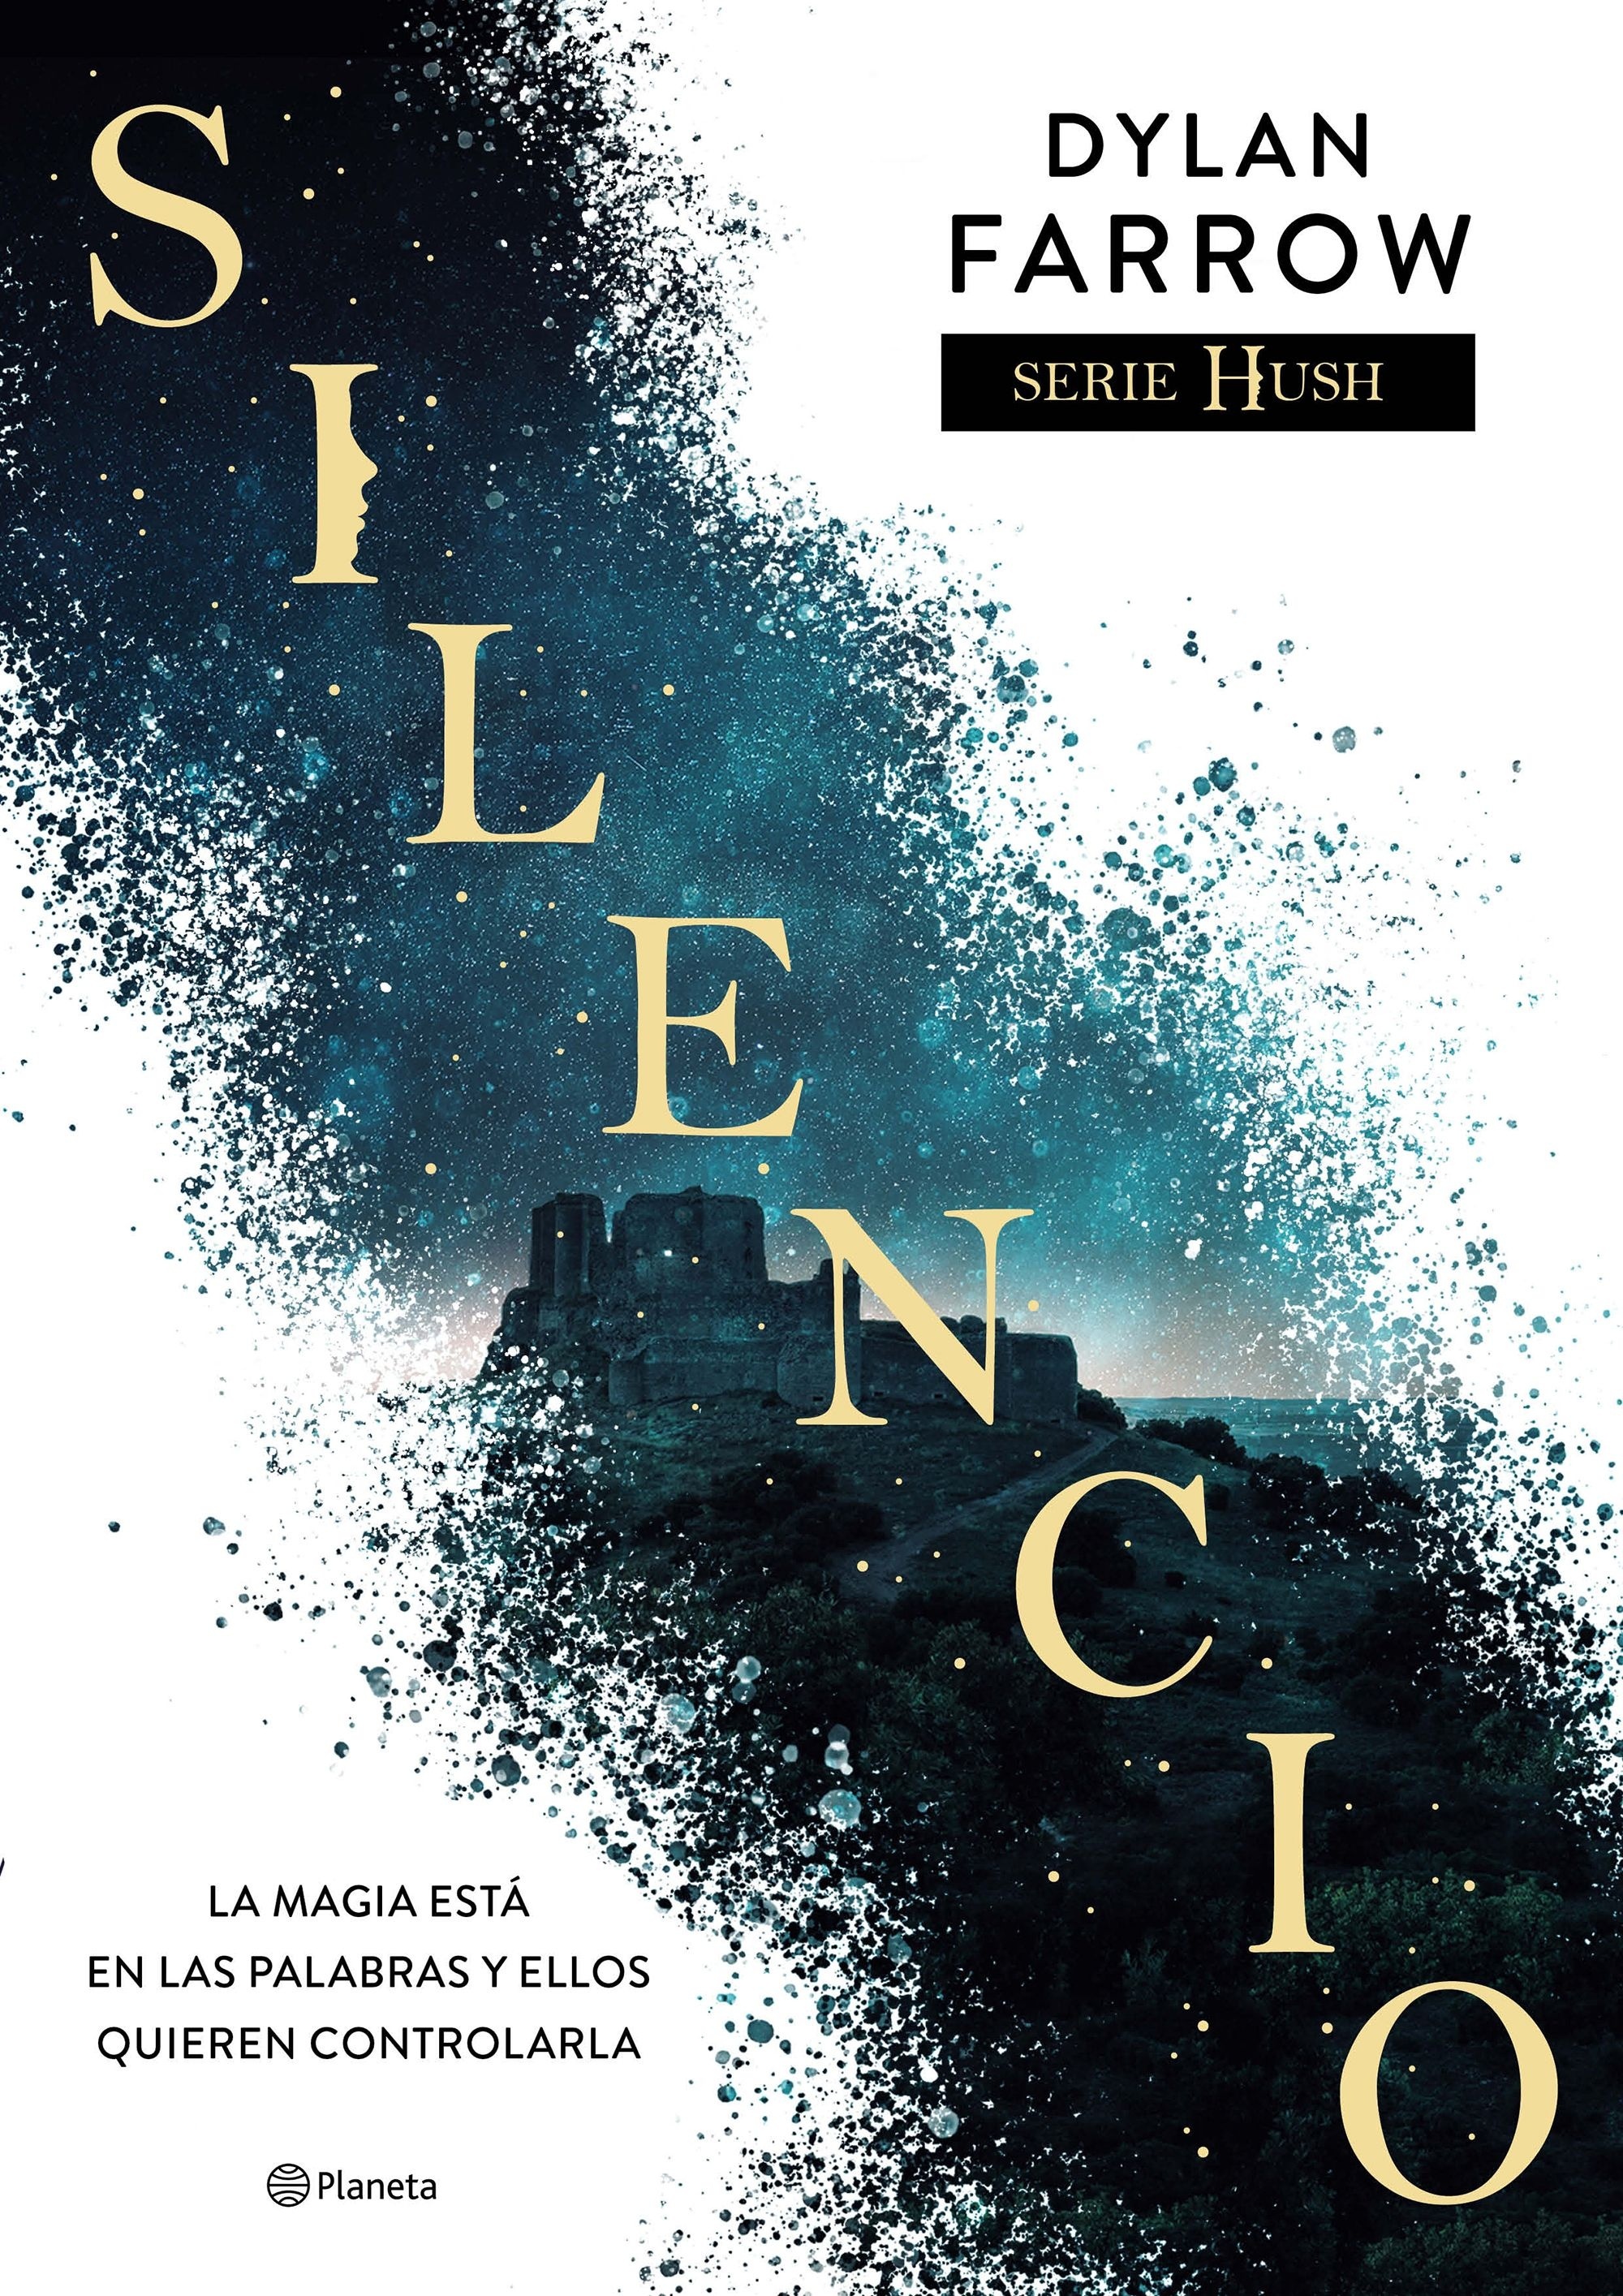 Silencio "Serie Hush 1". 